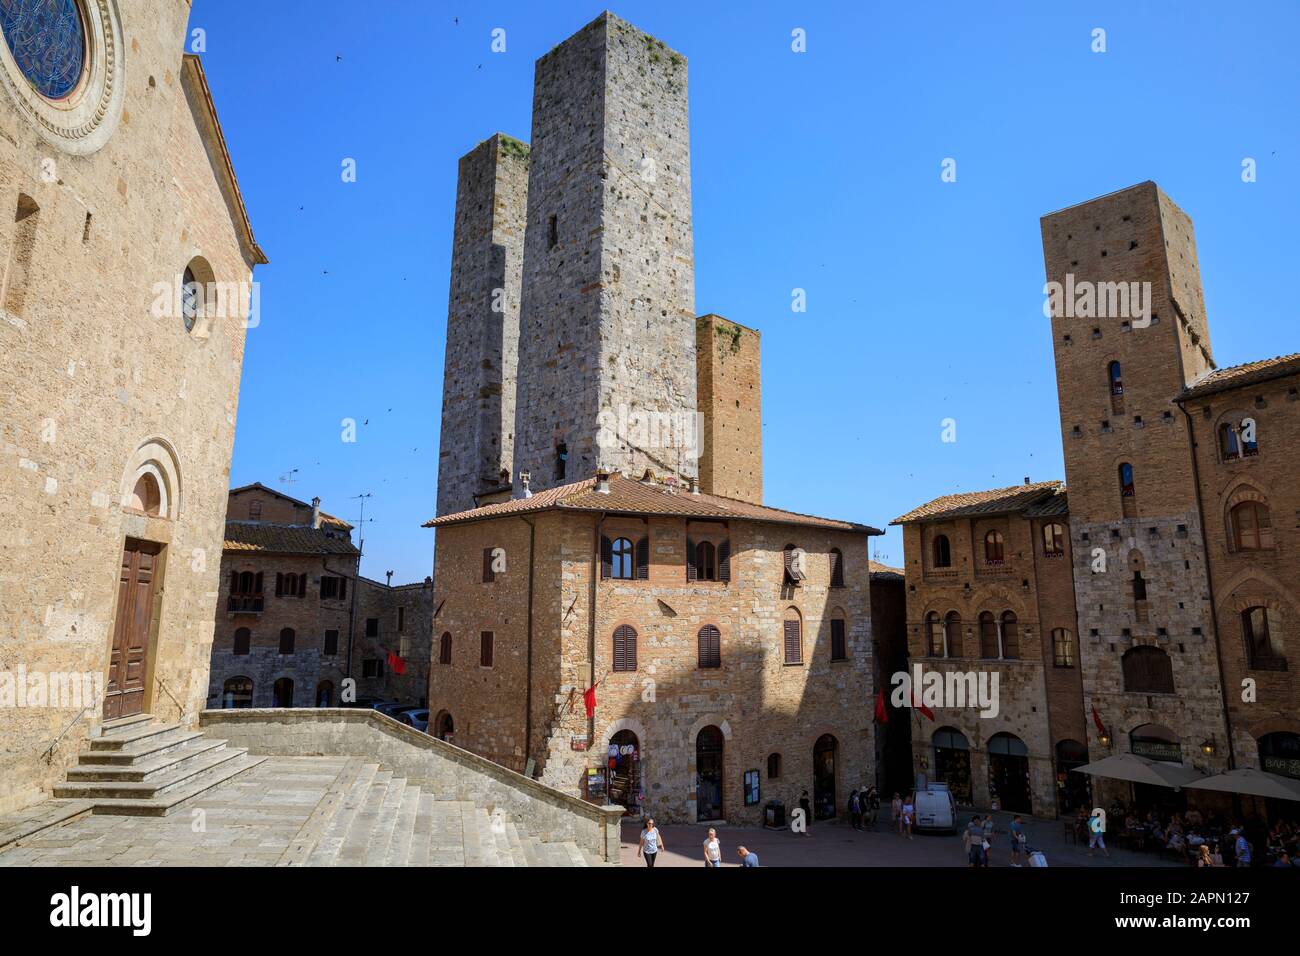 Duomo di San Gimignano (L) & Salvucci Towers (C) in San Gimignano, Italy. Stock Photo